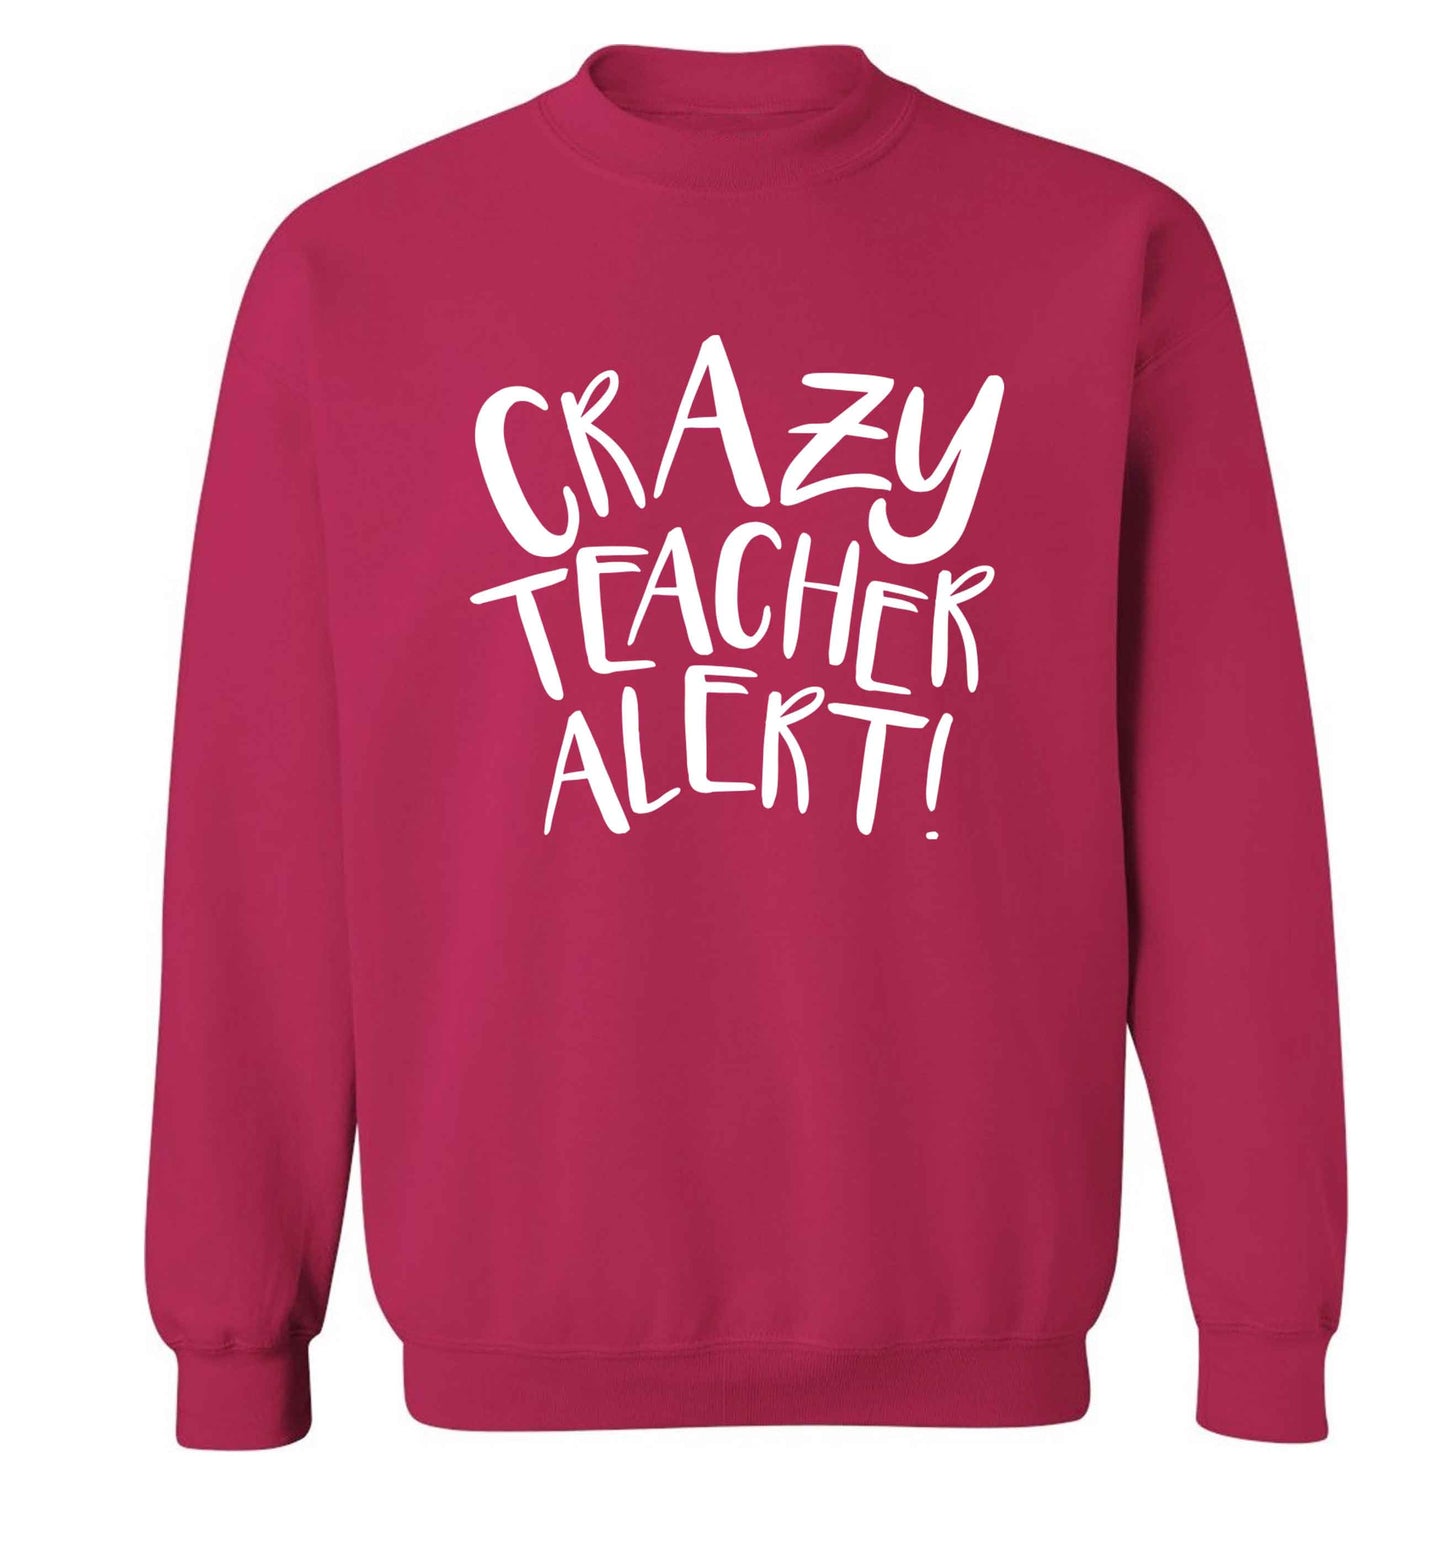 Crazy teacher alert adult's unisex pink sweater 2XL